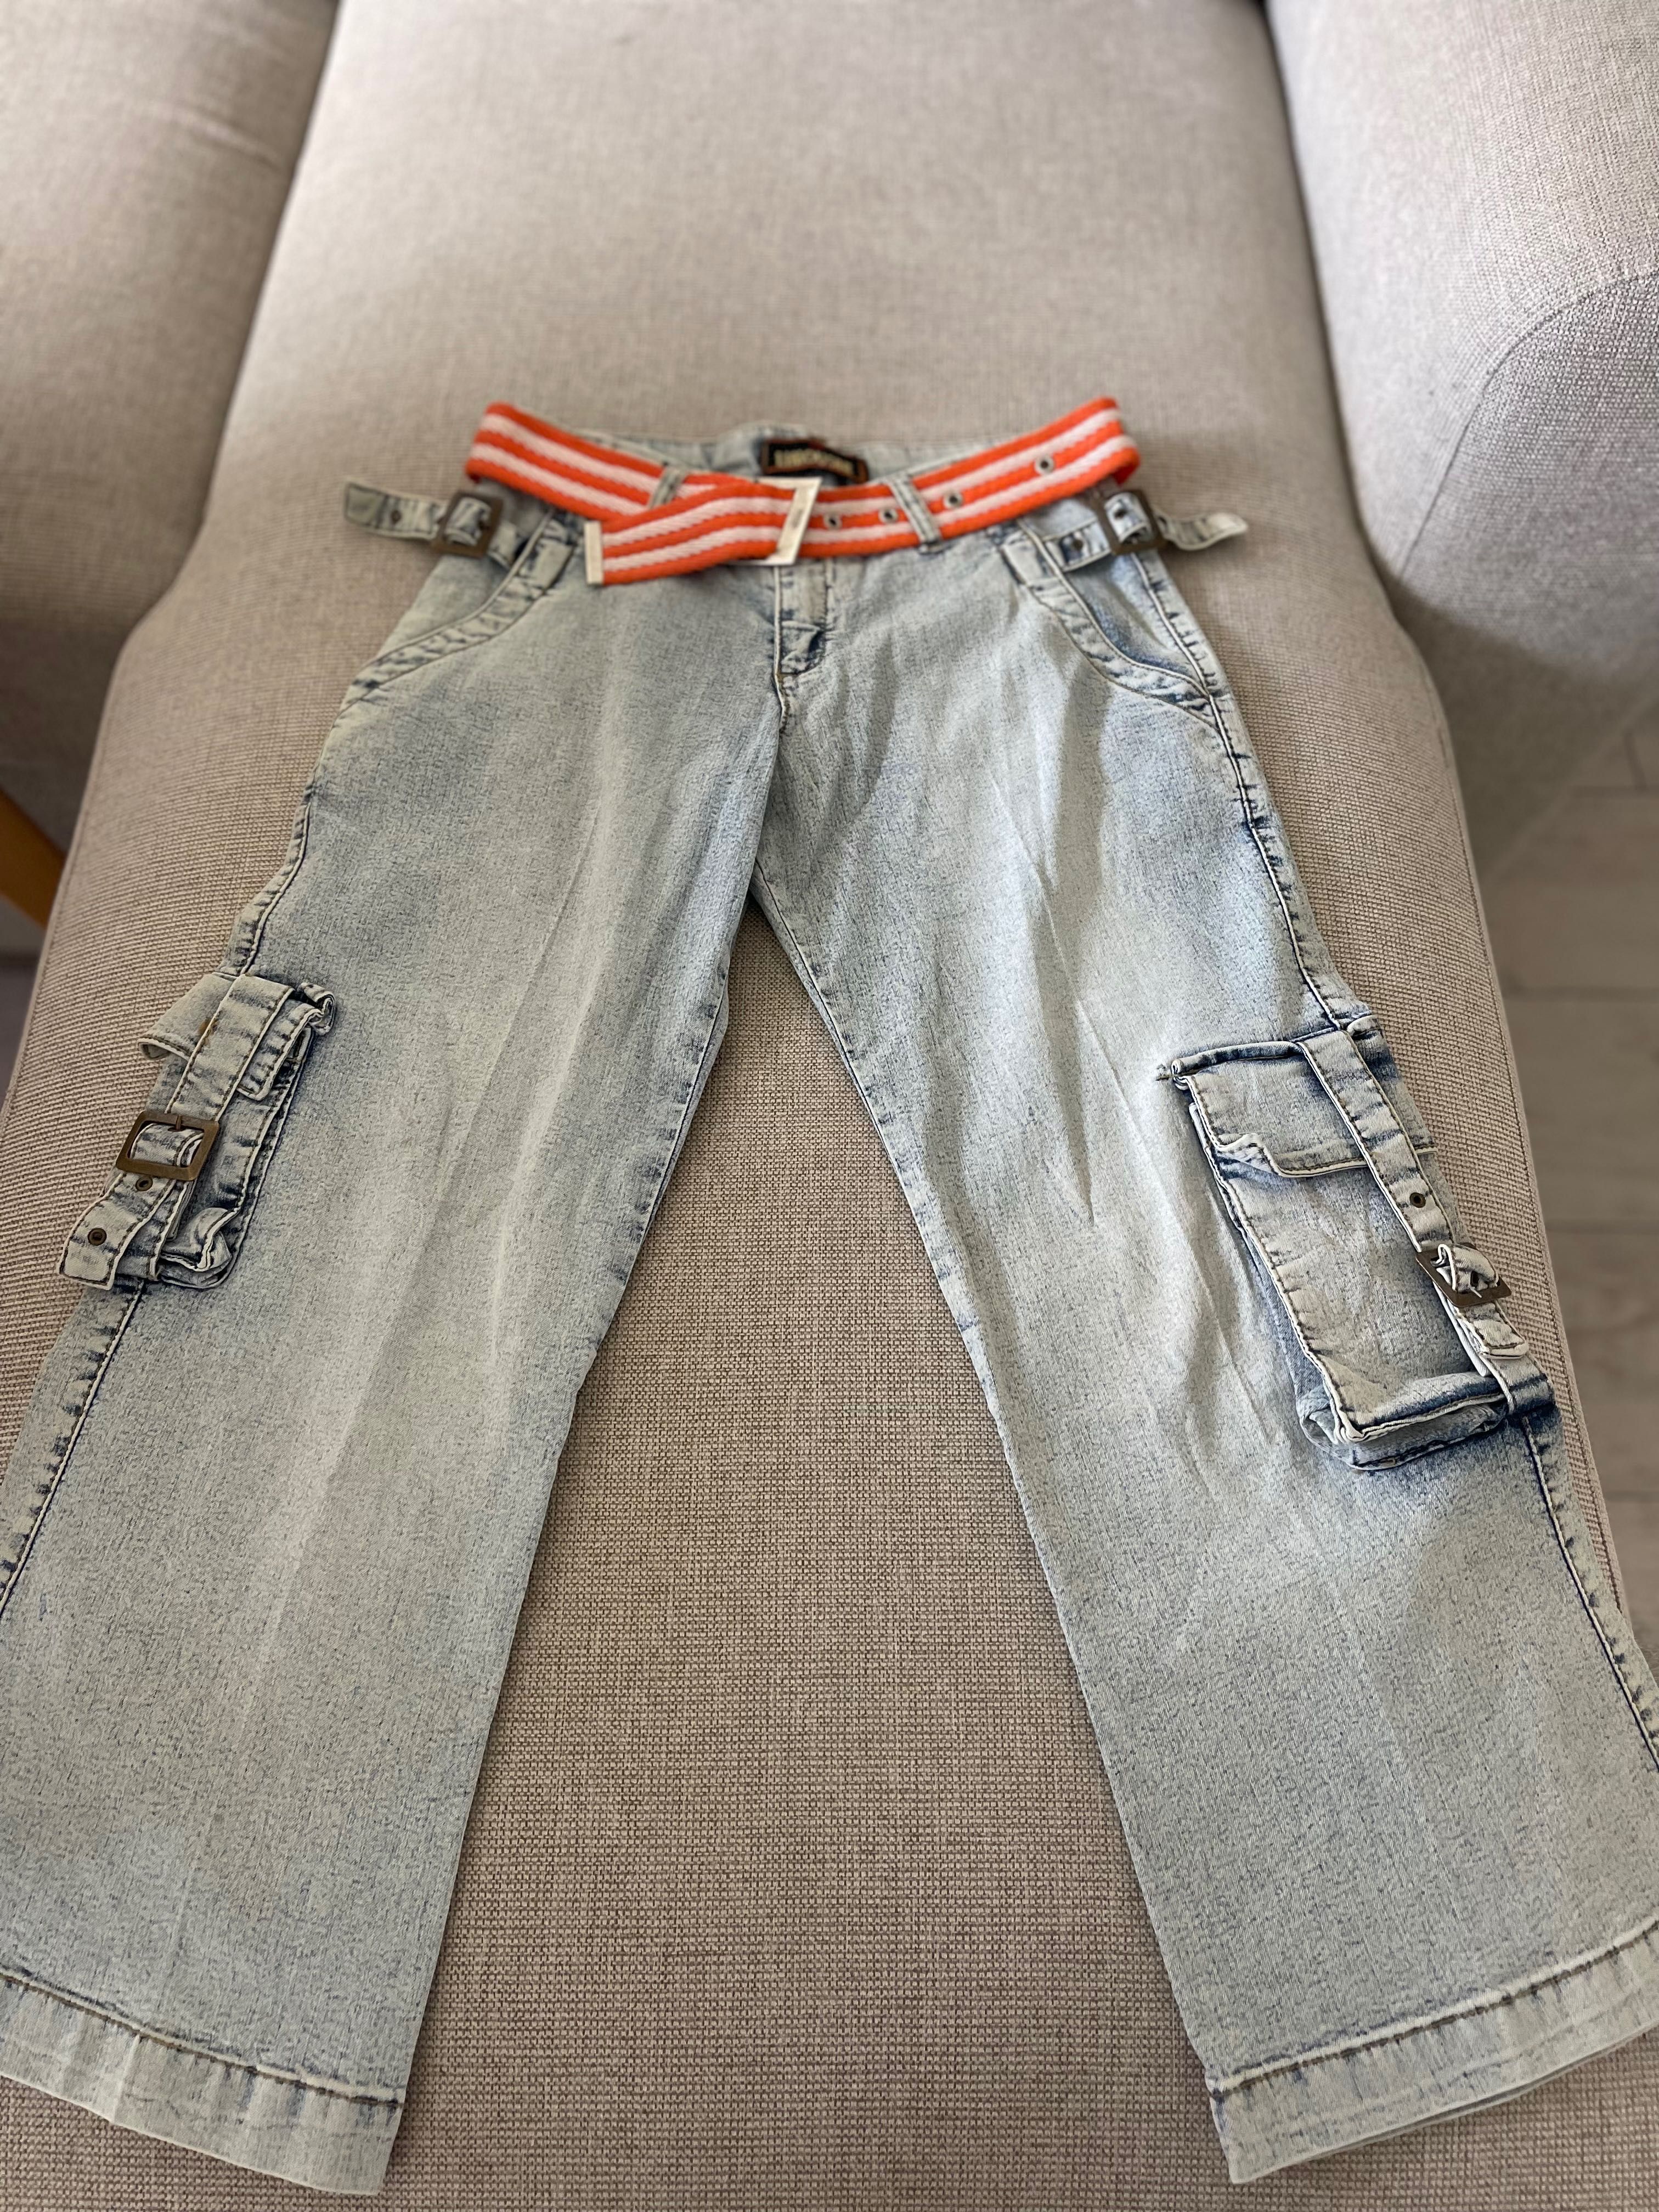 Новые джинсы укороченные на подростка